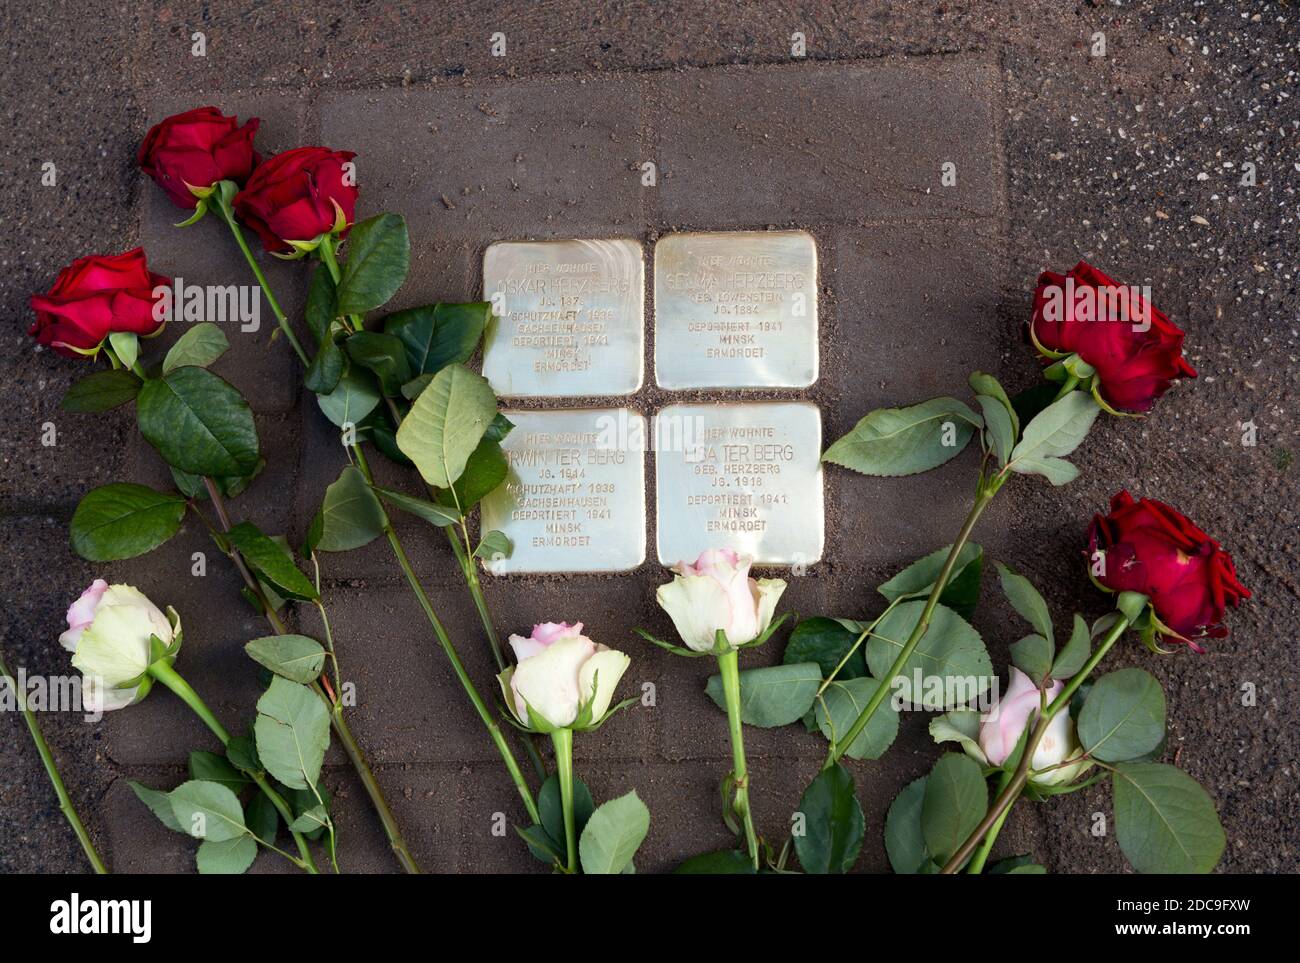 13.10.2020, Brema, Brema, Germania - lapide lapide per i deportati ebrei dell'era nazista. Stones inciampanti danno i nomi ai deportati al Foto Stock